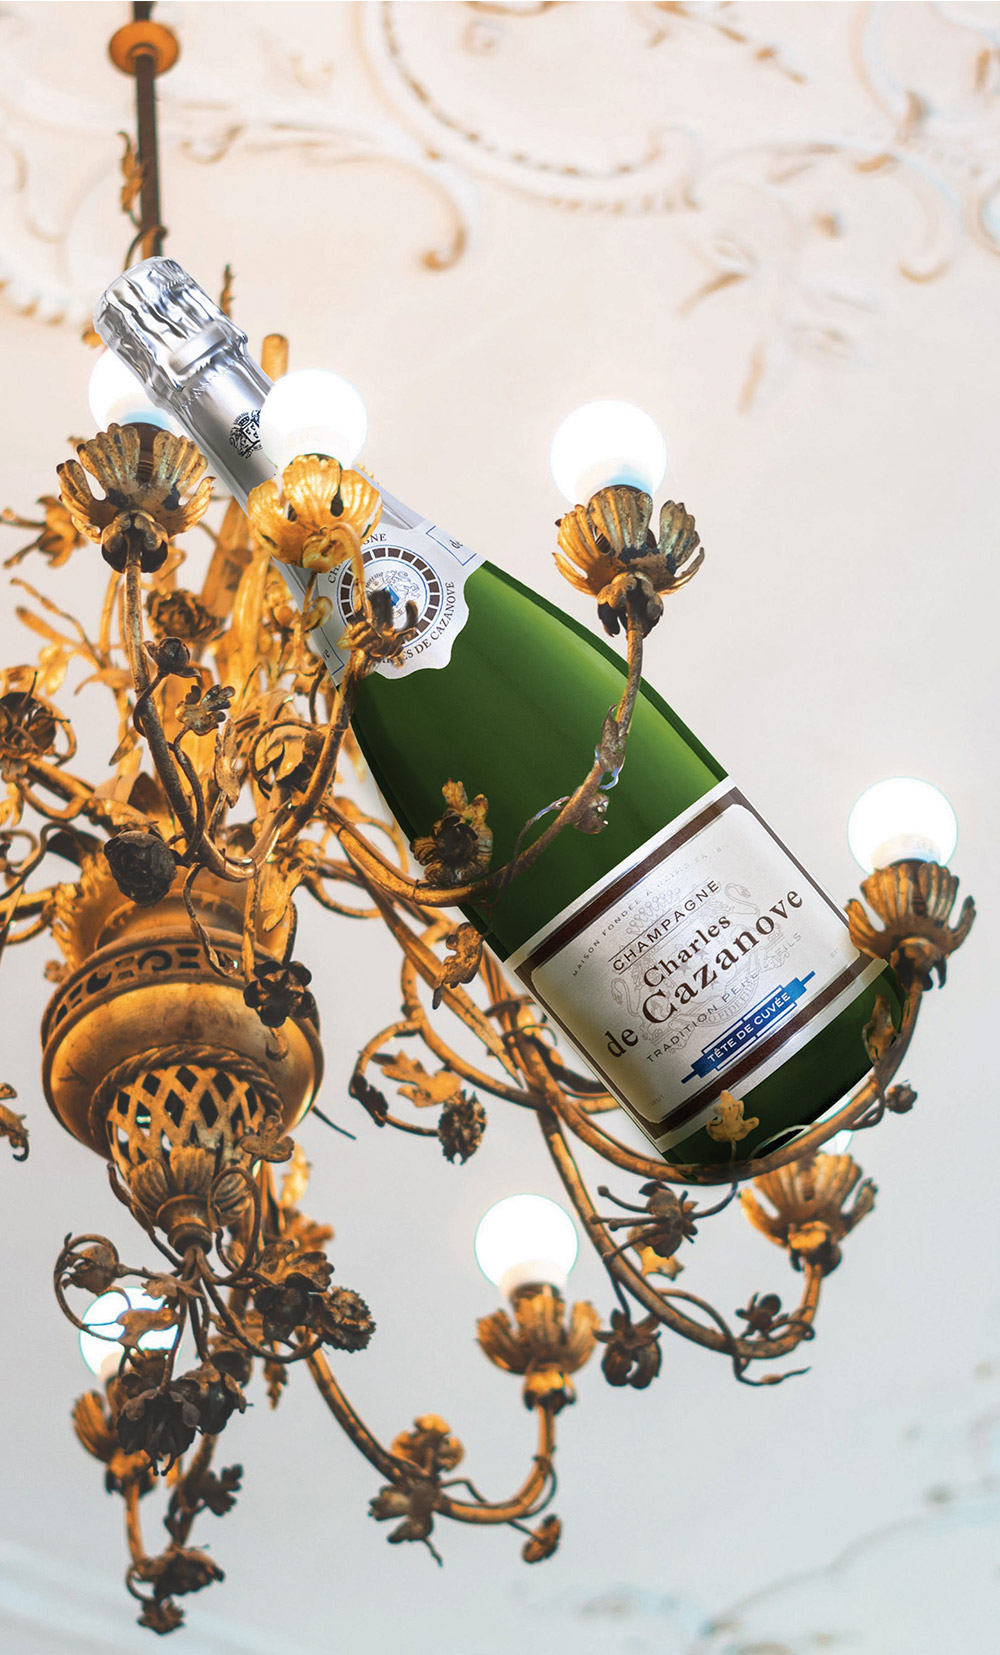 bouteille de champagne Charles de Cazanove Tête de cuvée posée sur lustre / bottle of Charles de Cazanove champagne Tête de cuvée on a chandelier